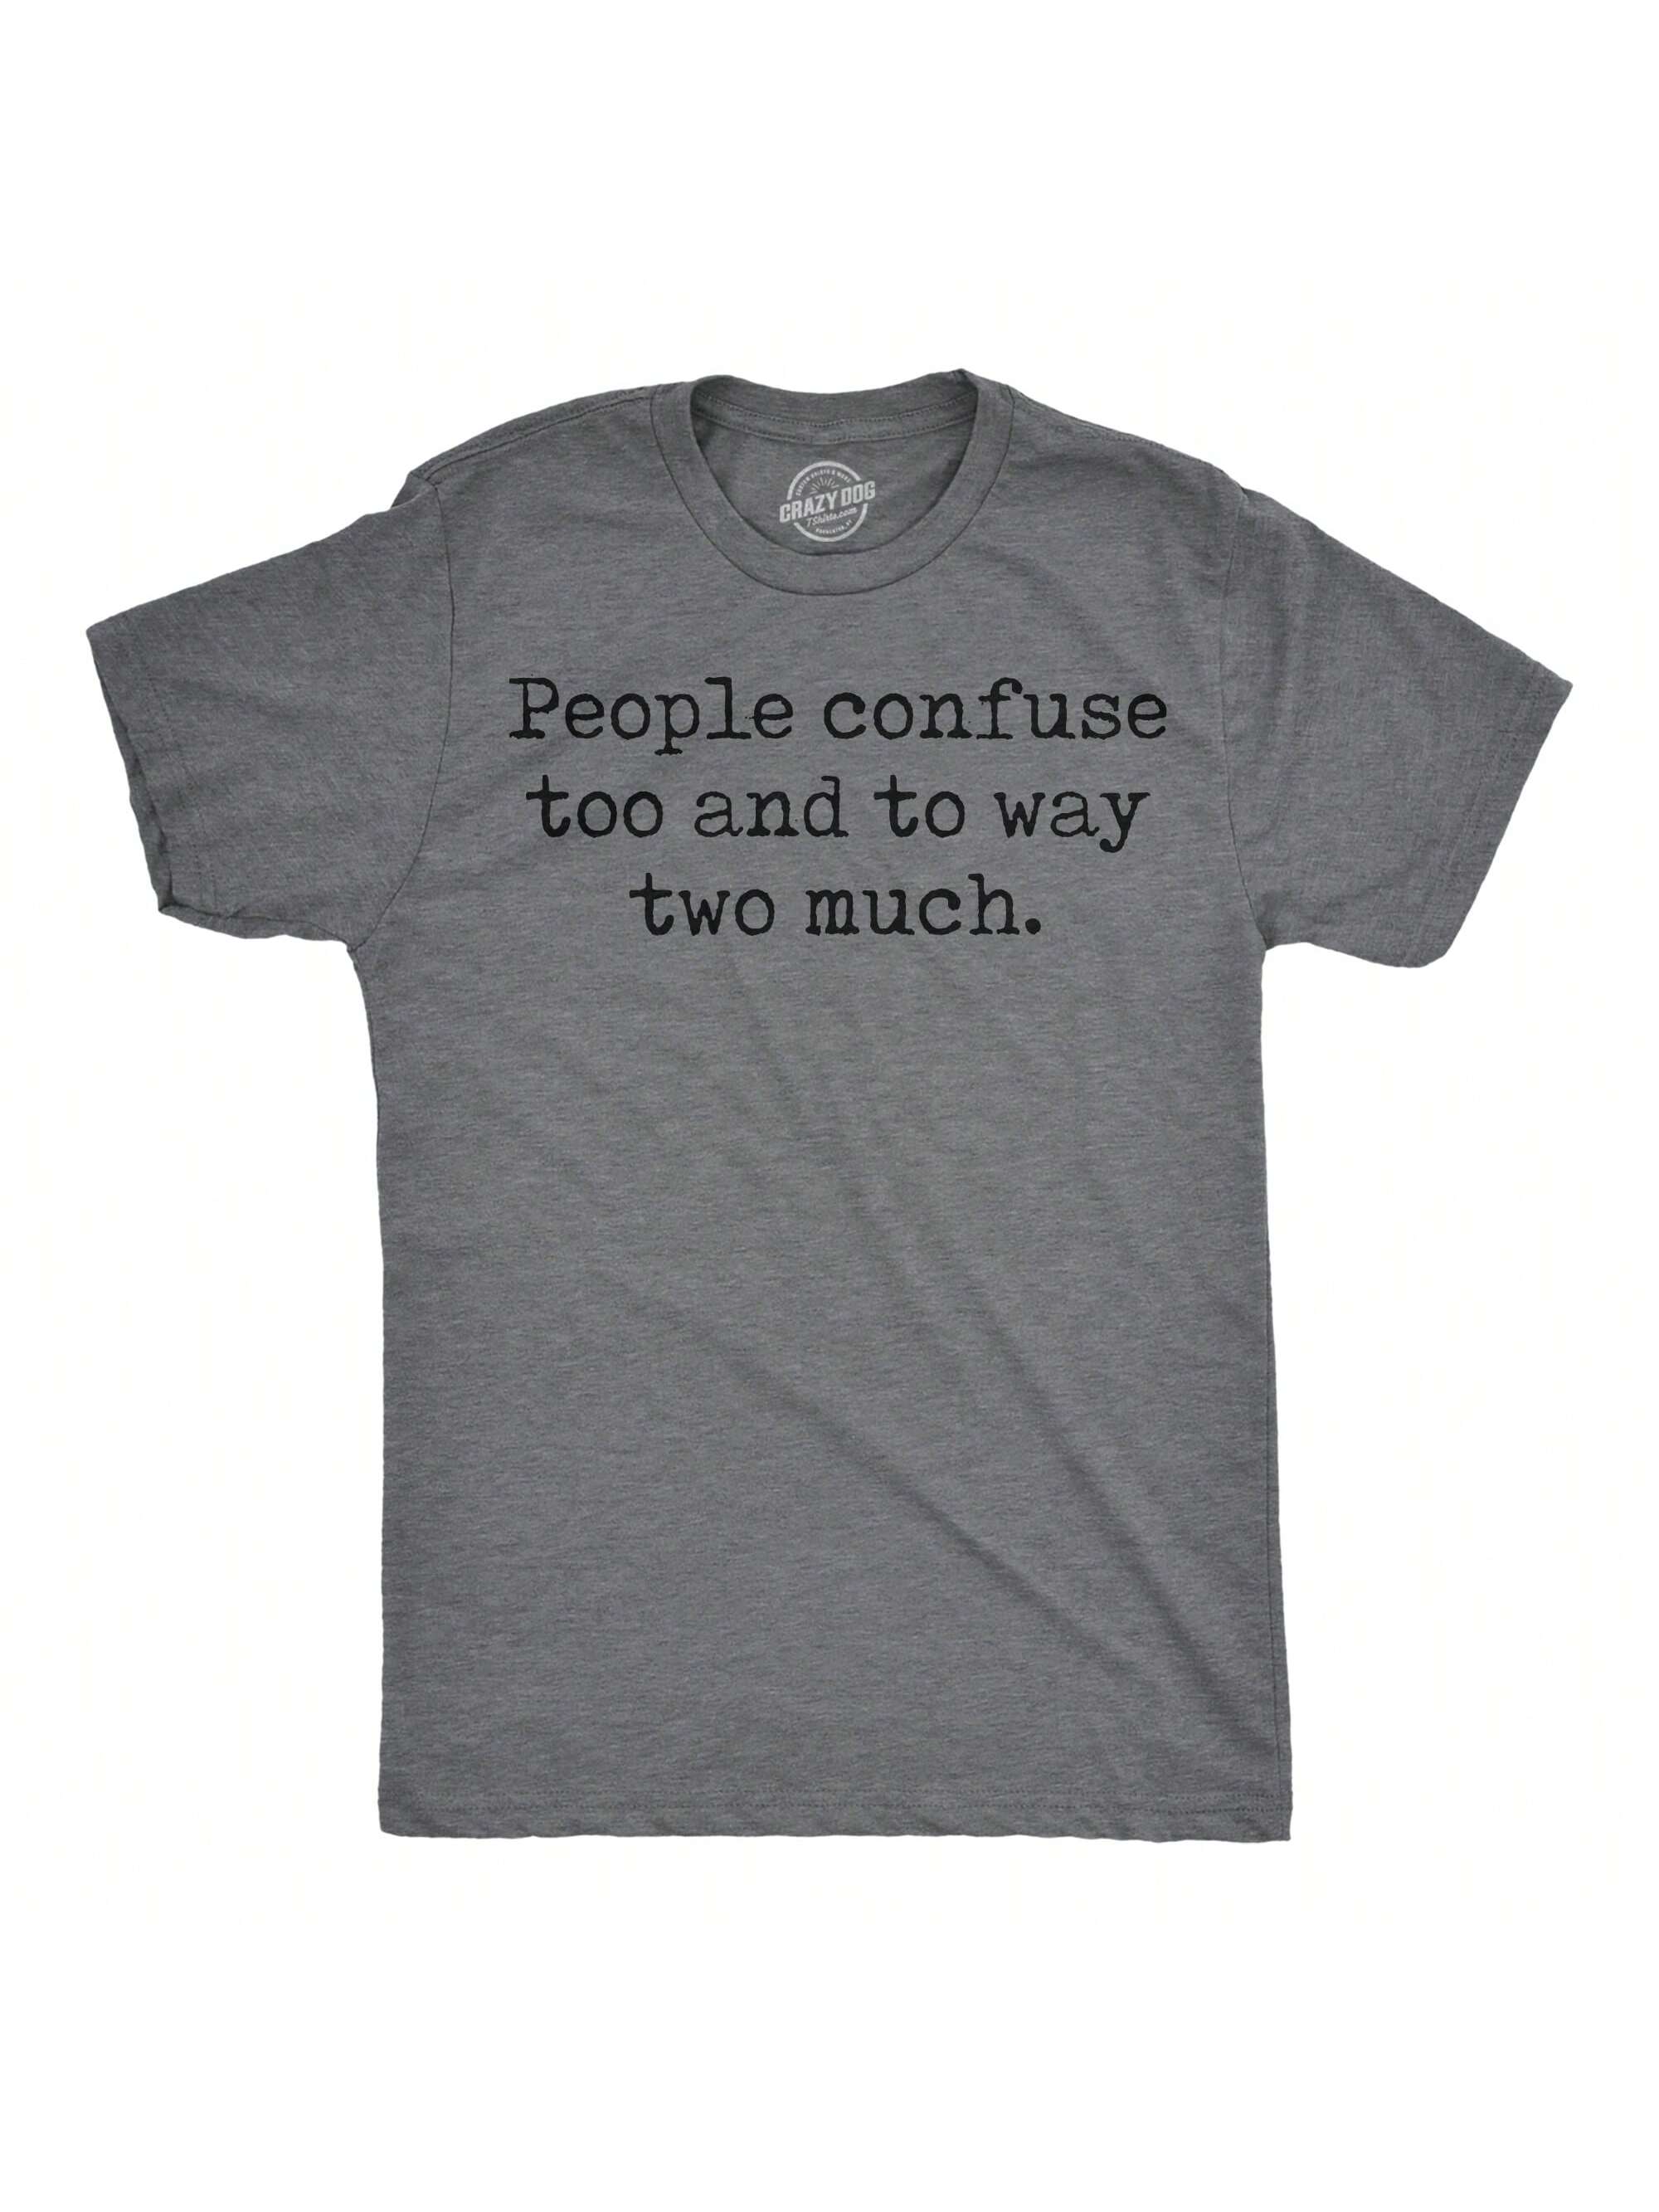 Мужские забавные футболки «Люди тоже путают» и «На двоих очень саркастическая футболка» (темно-серый вереск — «Люди путают слишком двоих»)